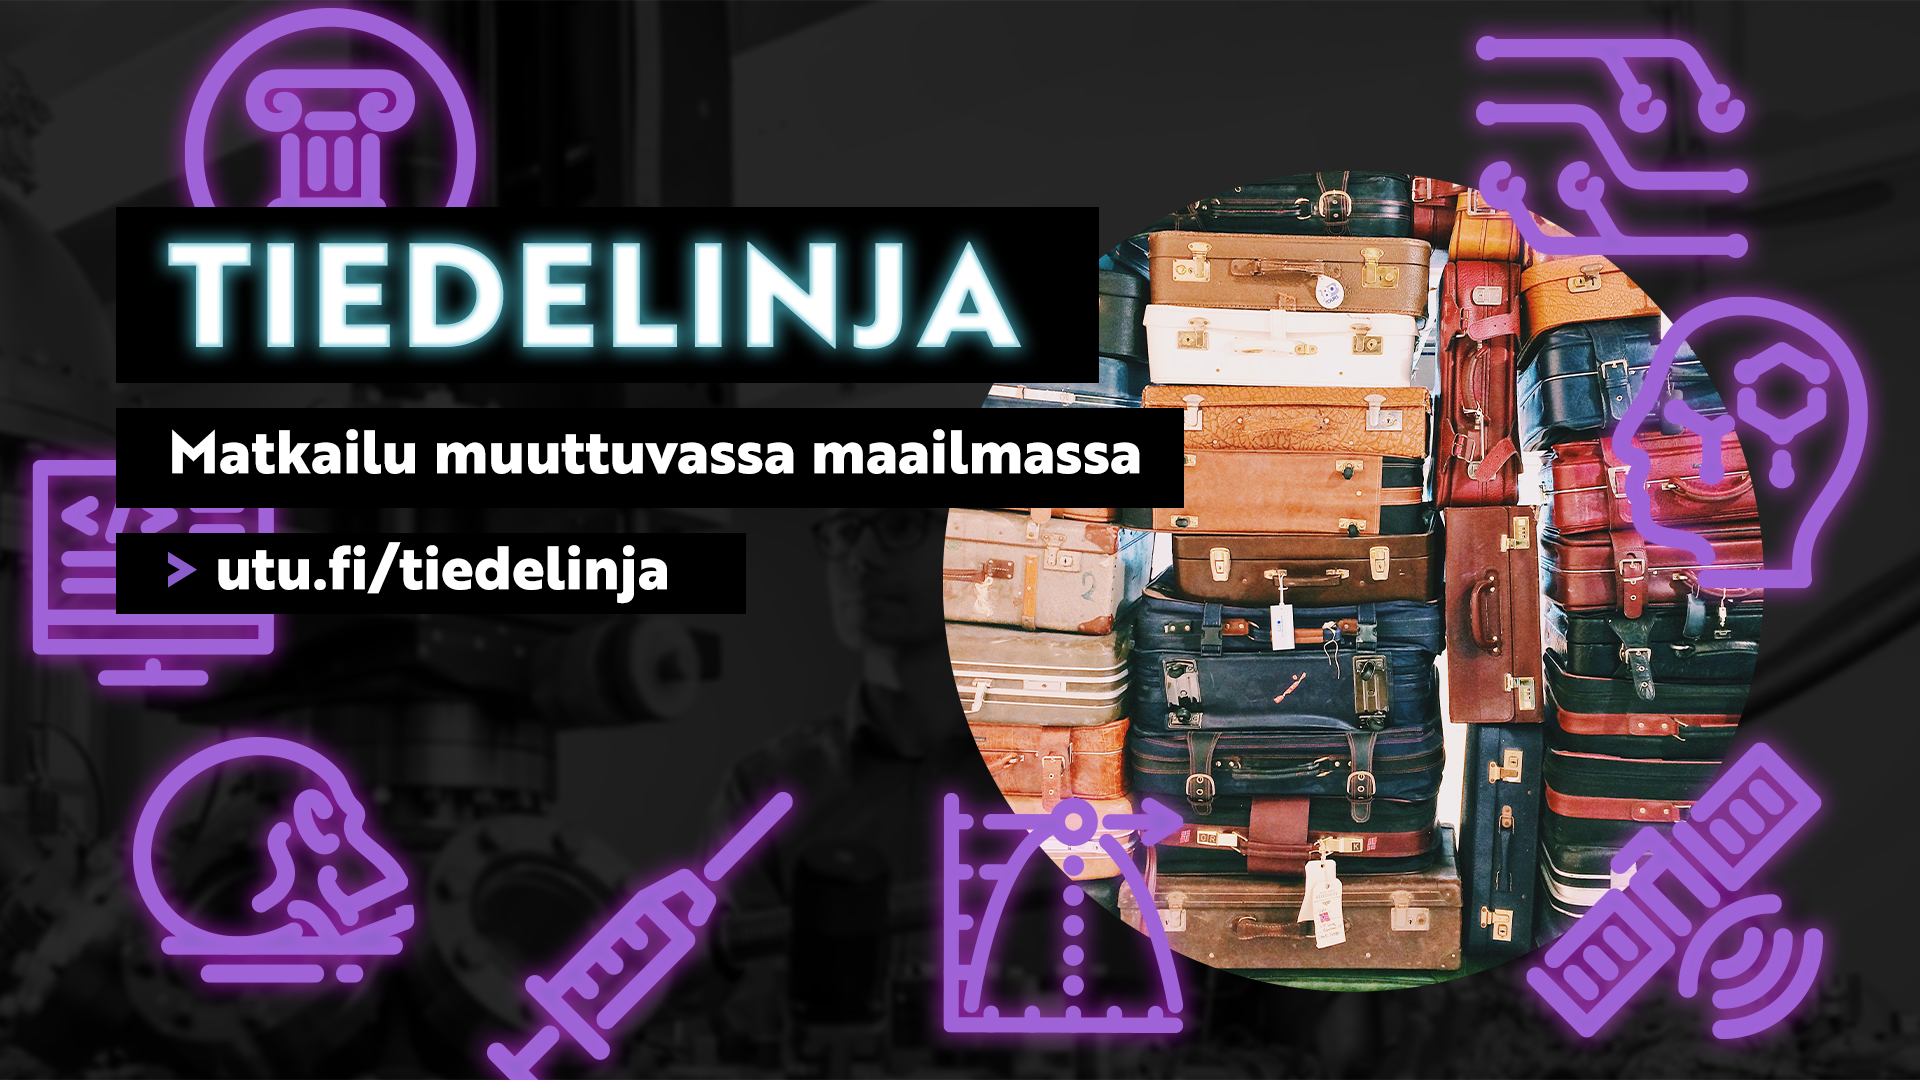 Kuvassa matkalaukkuja ja teksti Tiedelinja Matkailu muuttuvassa maailmassa > utu.fi/tiedelinja